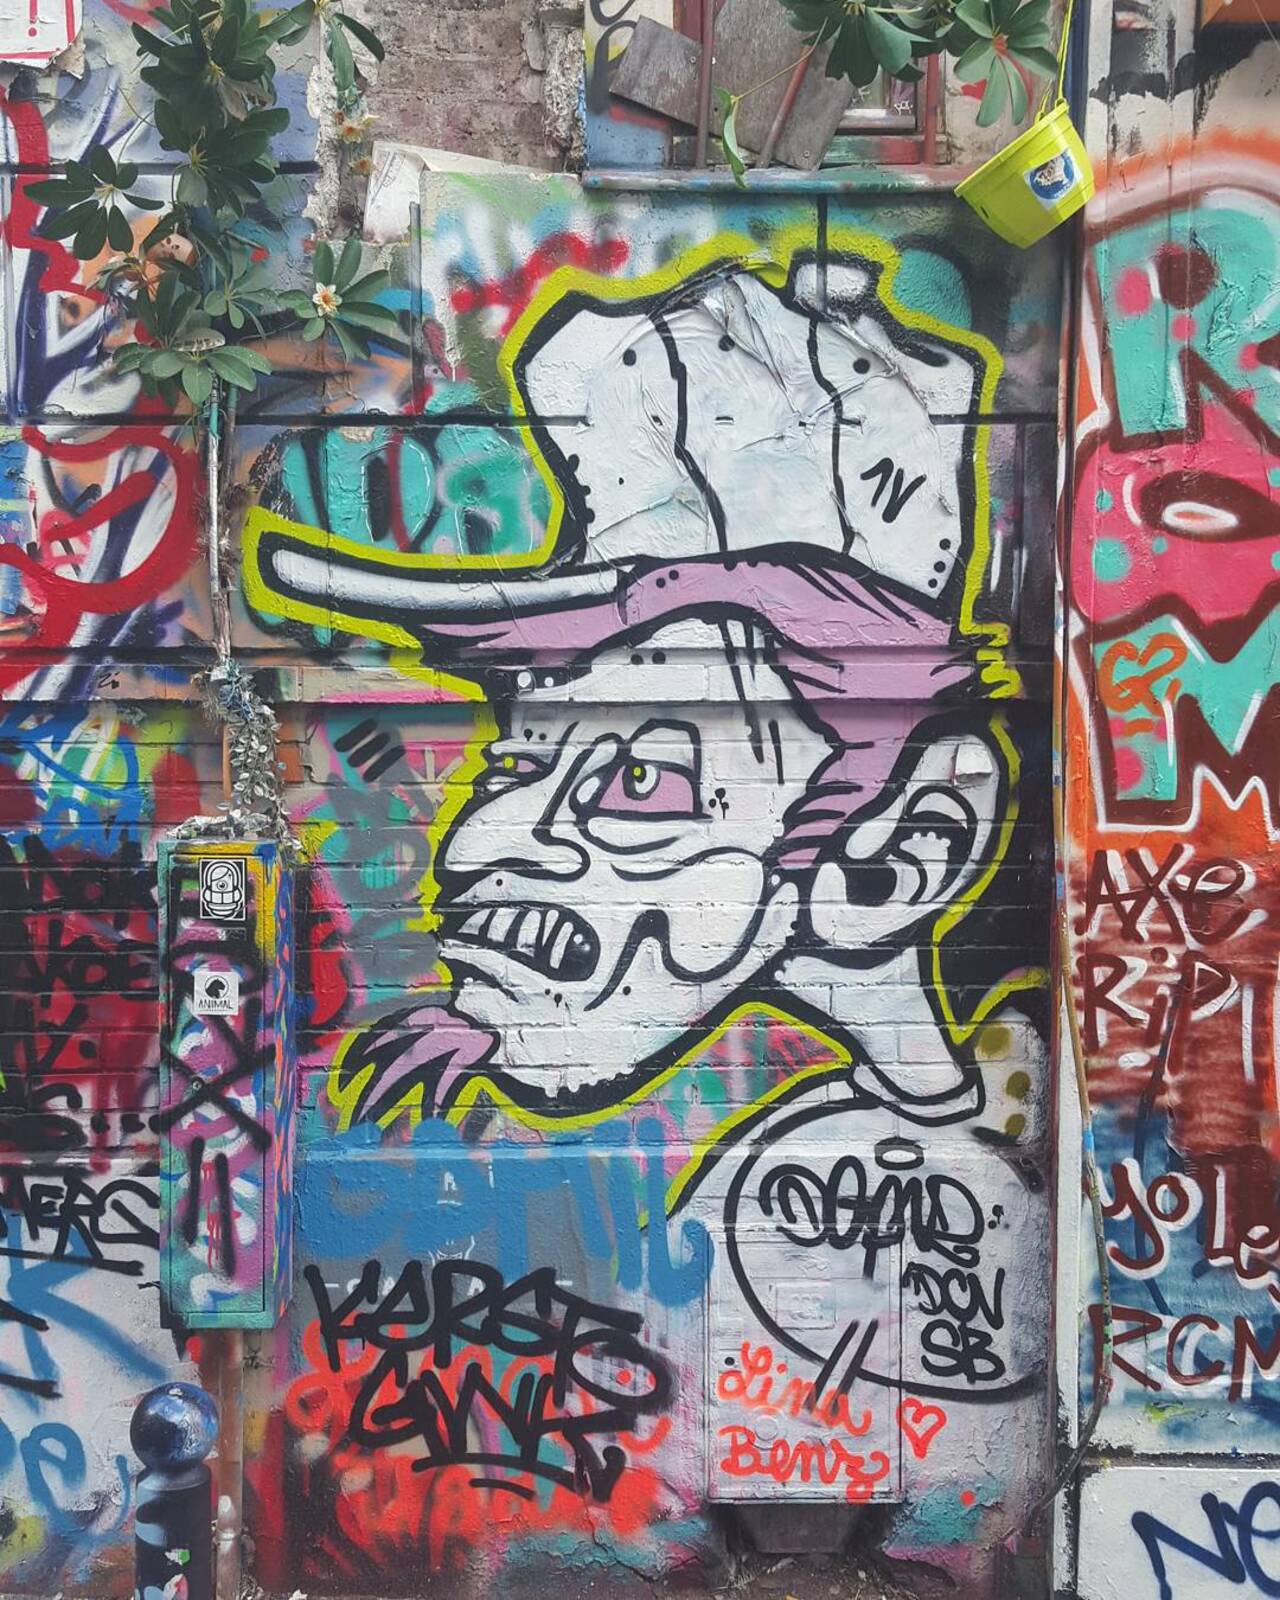 circumjacent_fr: #Paris #graffiti photo by jdewey67 http://ift.tt/1KWZKtW #StreetArt http://t.co/jvmBNgzmRo